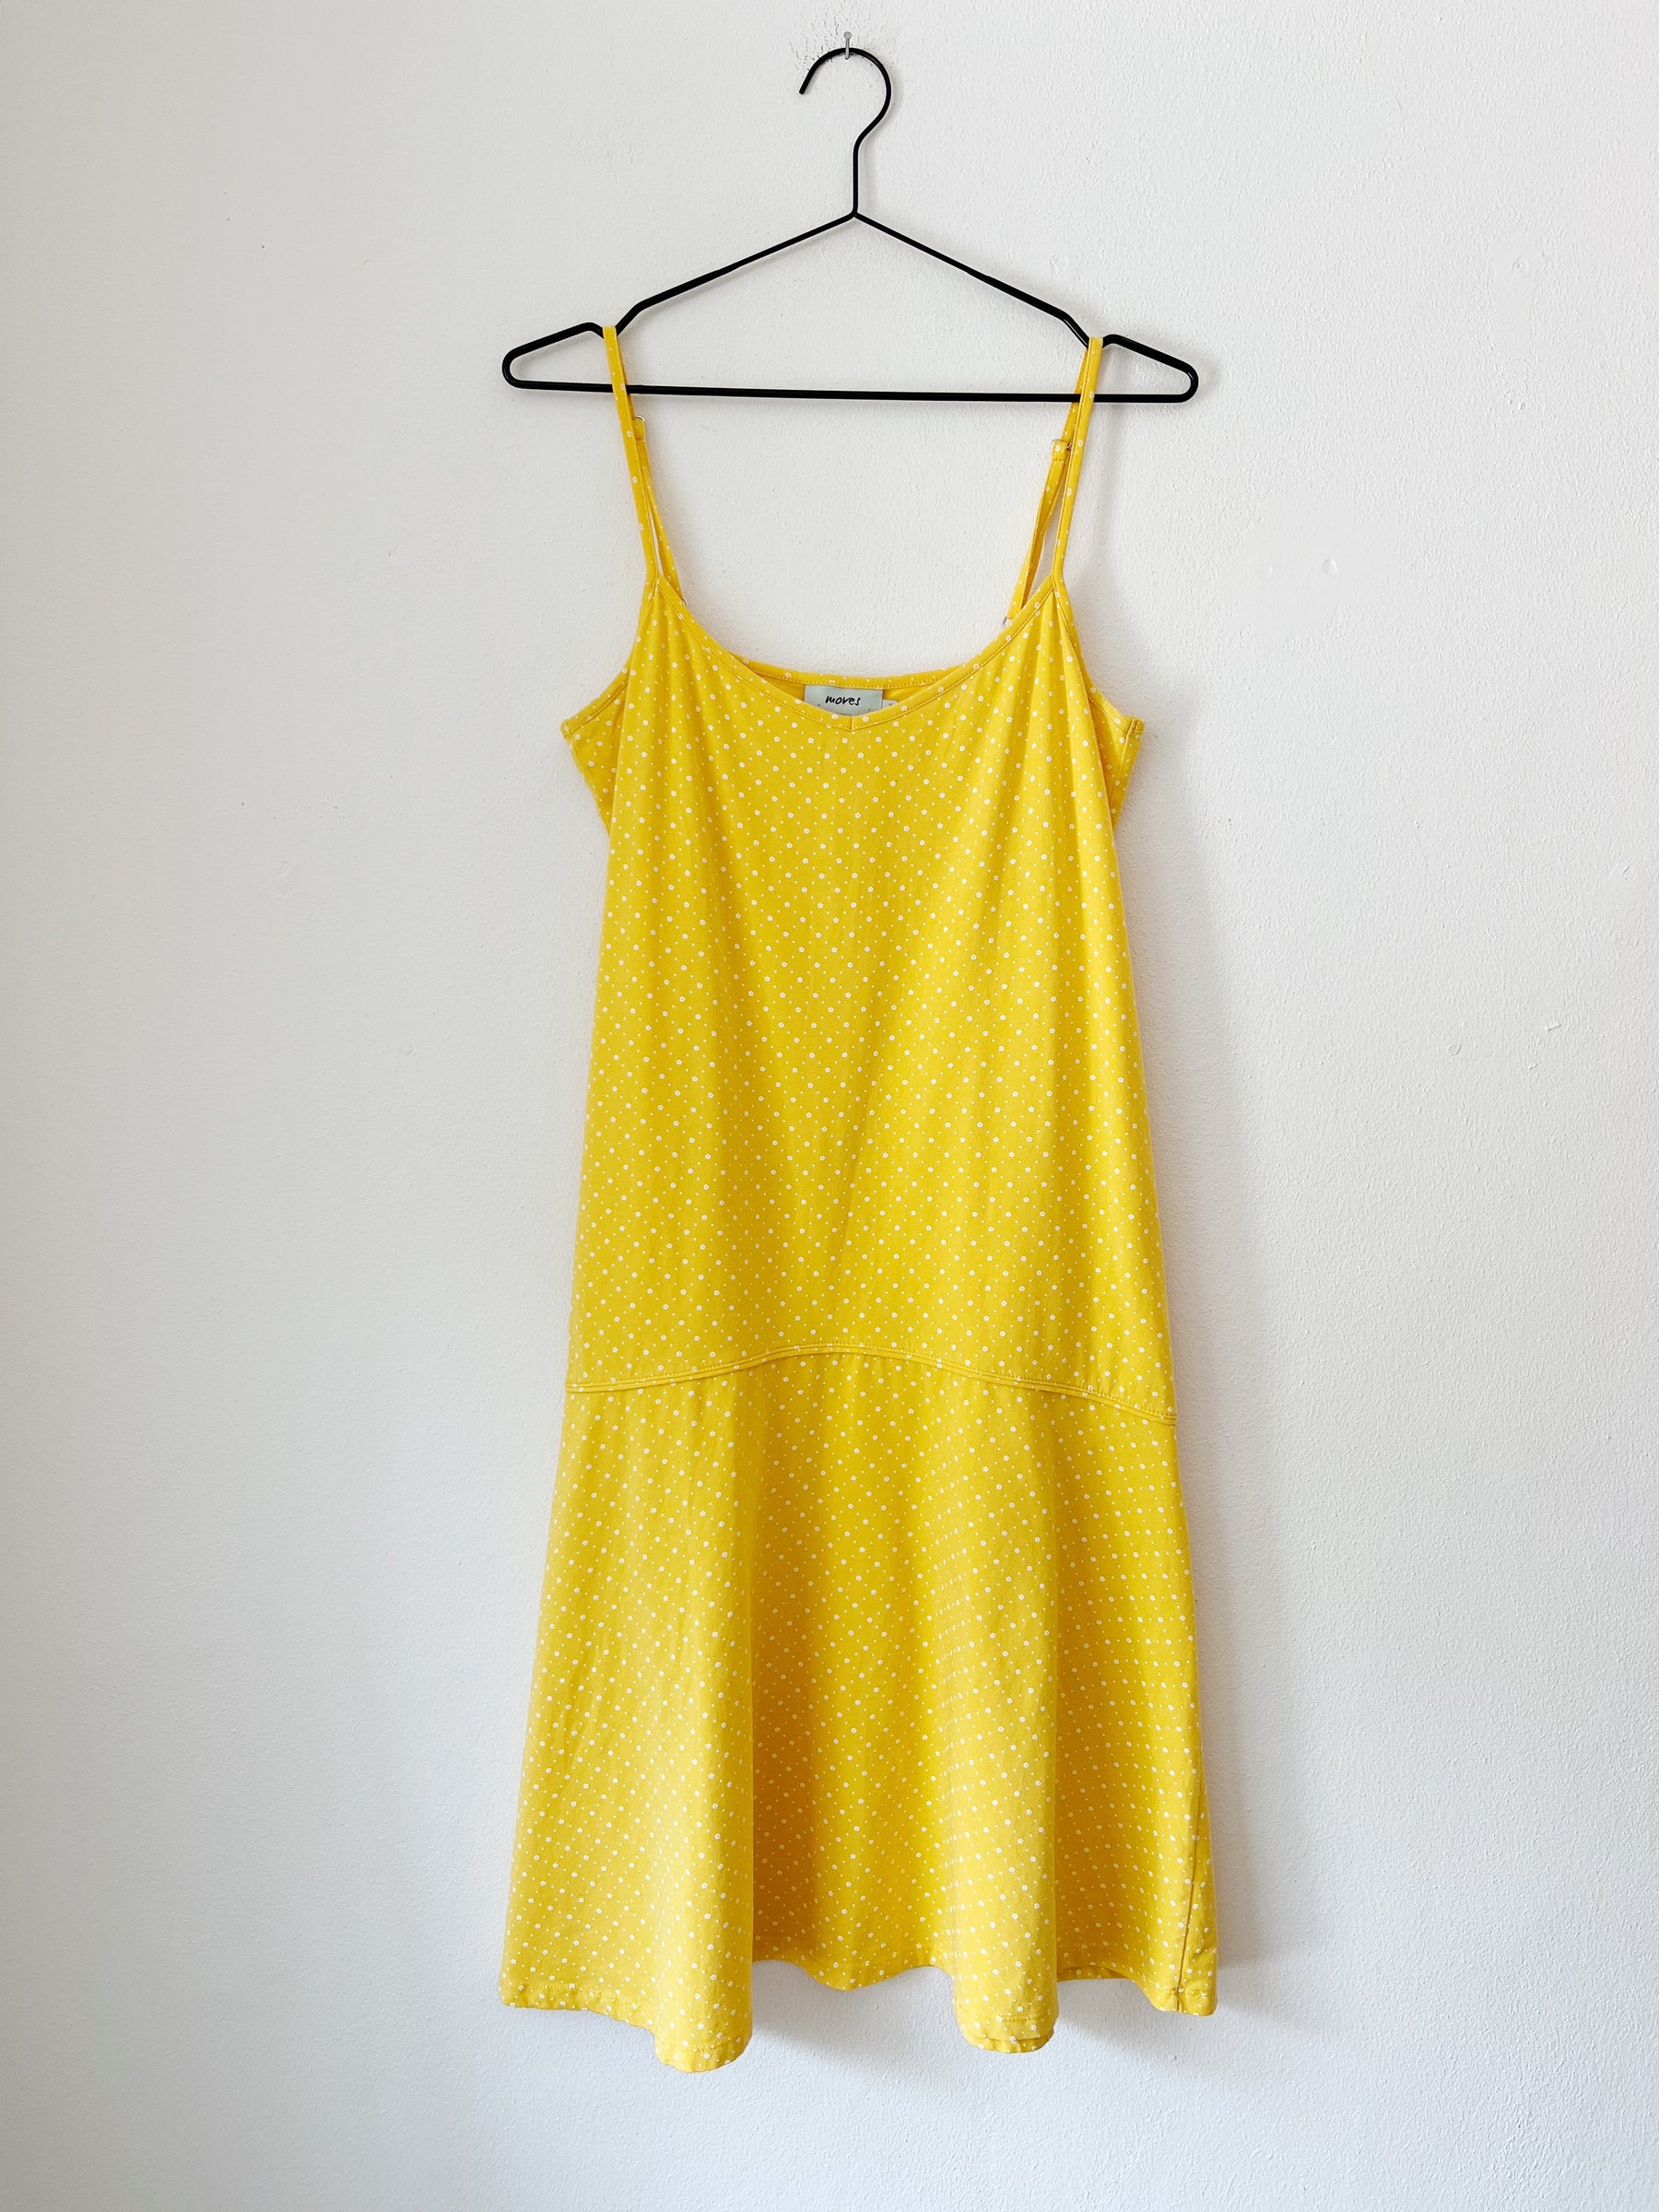 gul kjole